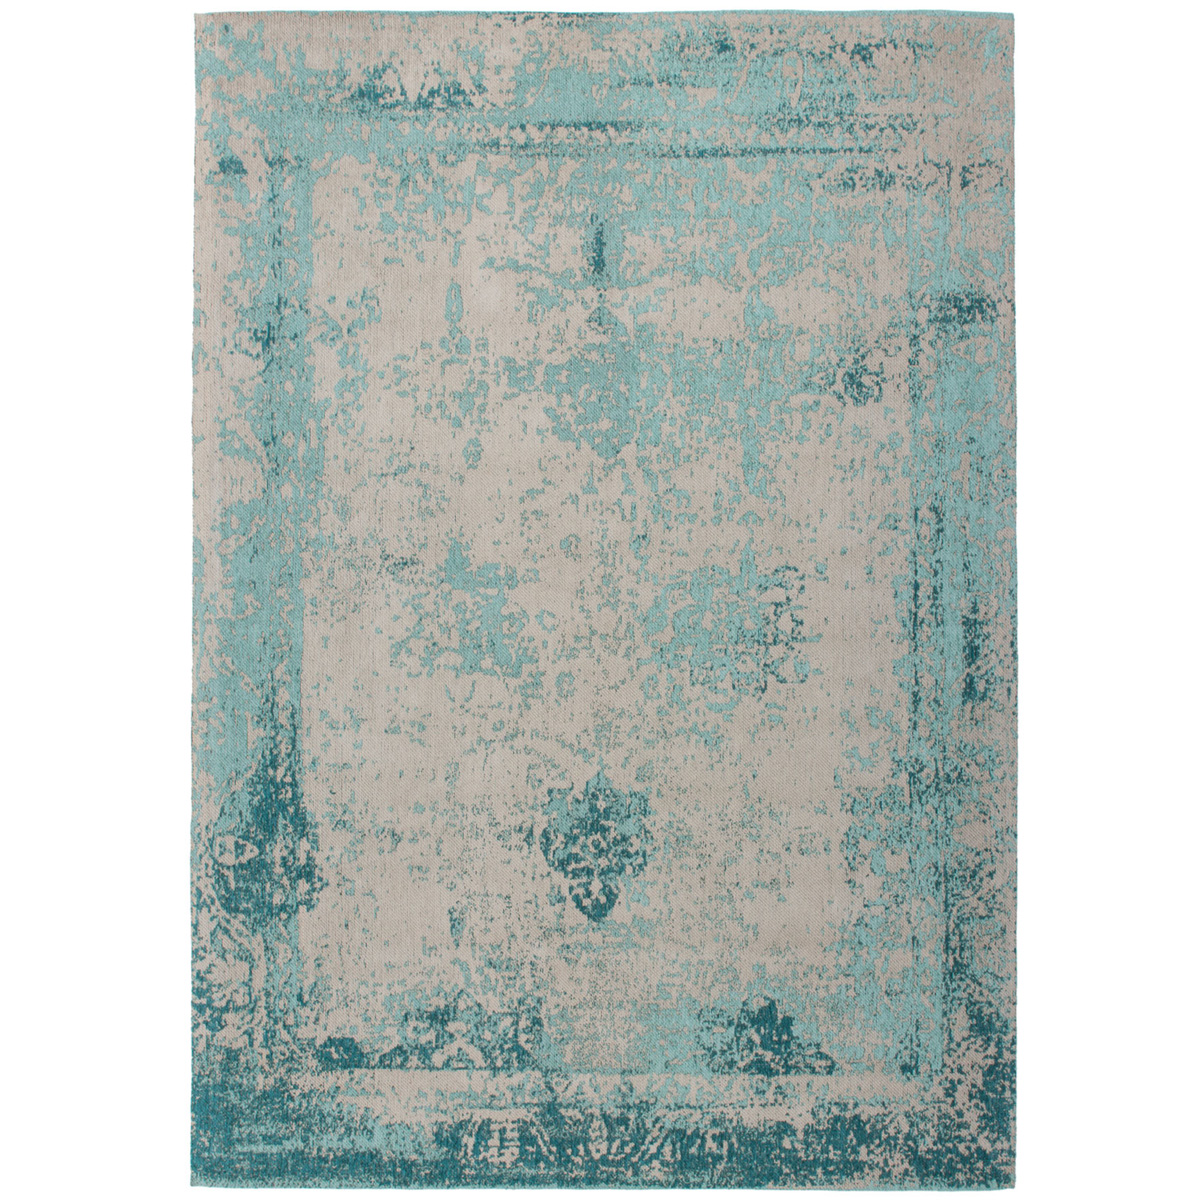 Watt Tom Audreath Concreet Turquoise vintage tapijt kopen? | Vloerkleden | kameraankleden.nl